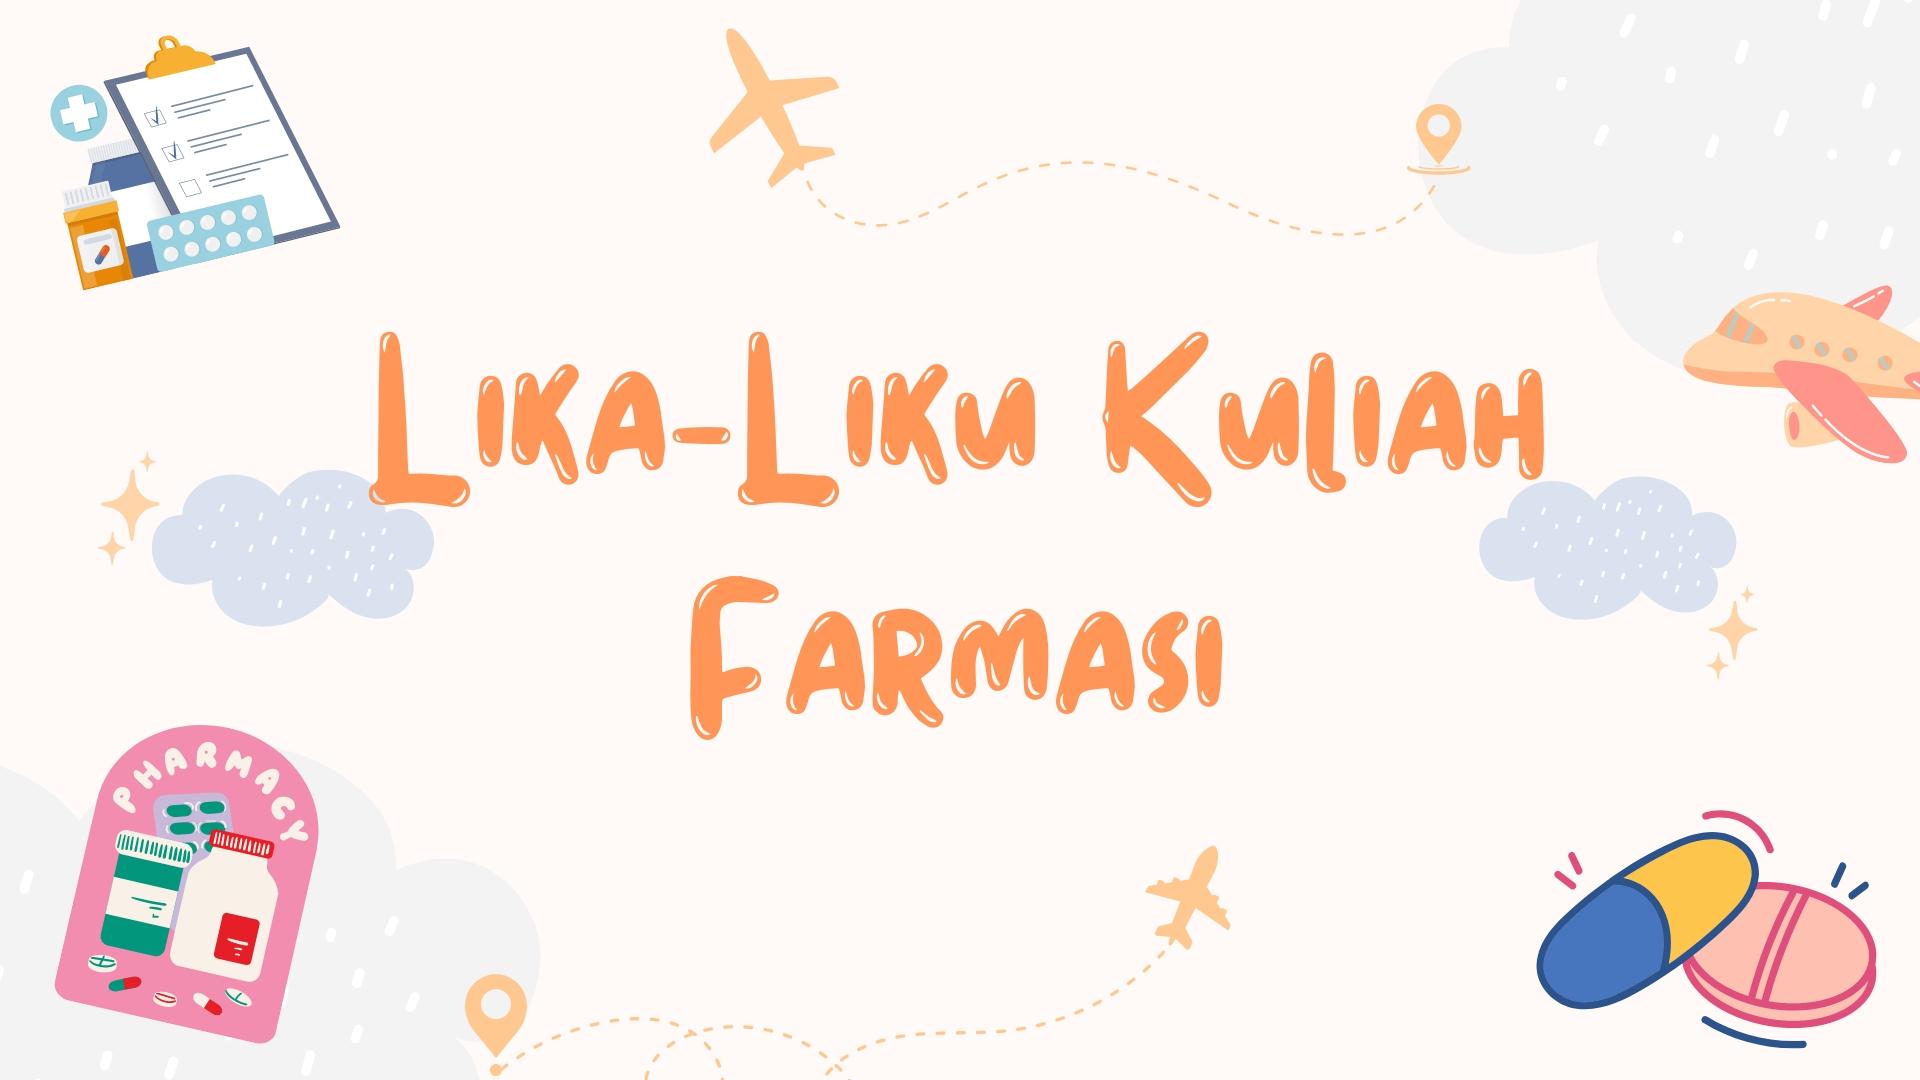 Thumbnail for article Lika-Liku Selama Kuliah di Farmasi